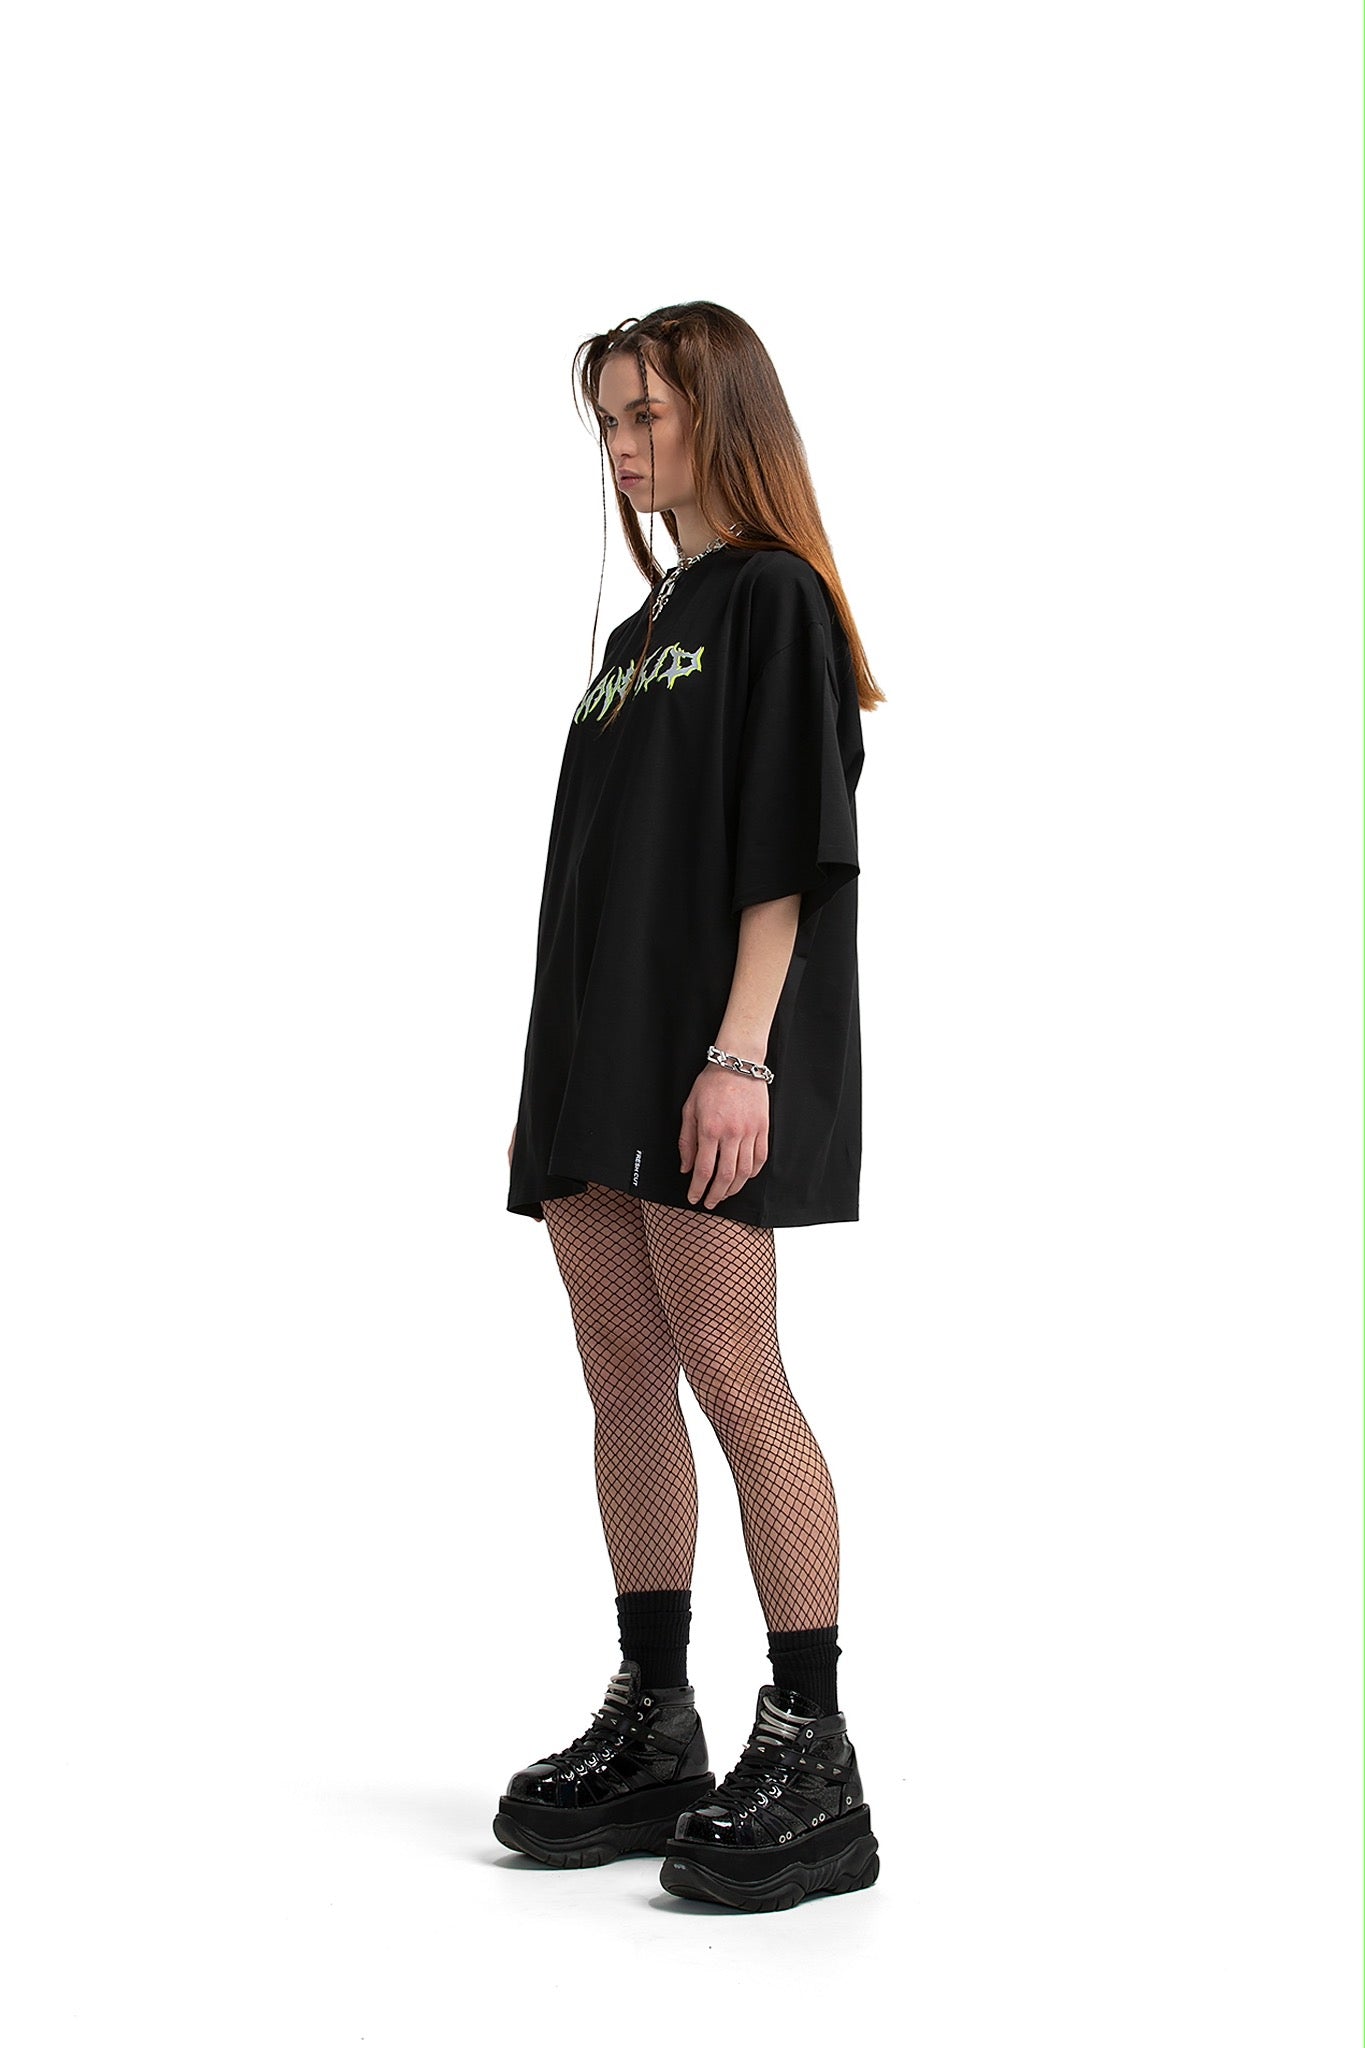 Rave Kid Unisex oversized T-shirt [black]